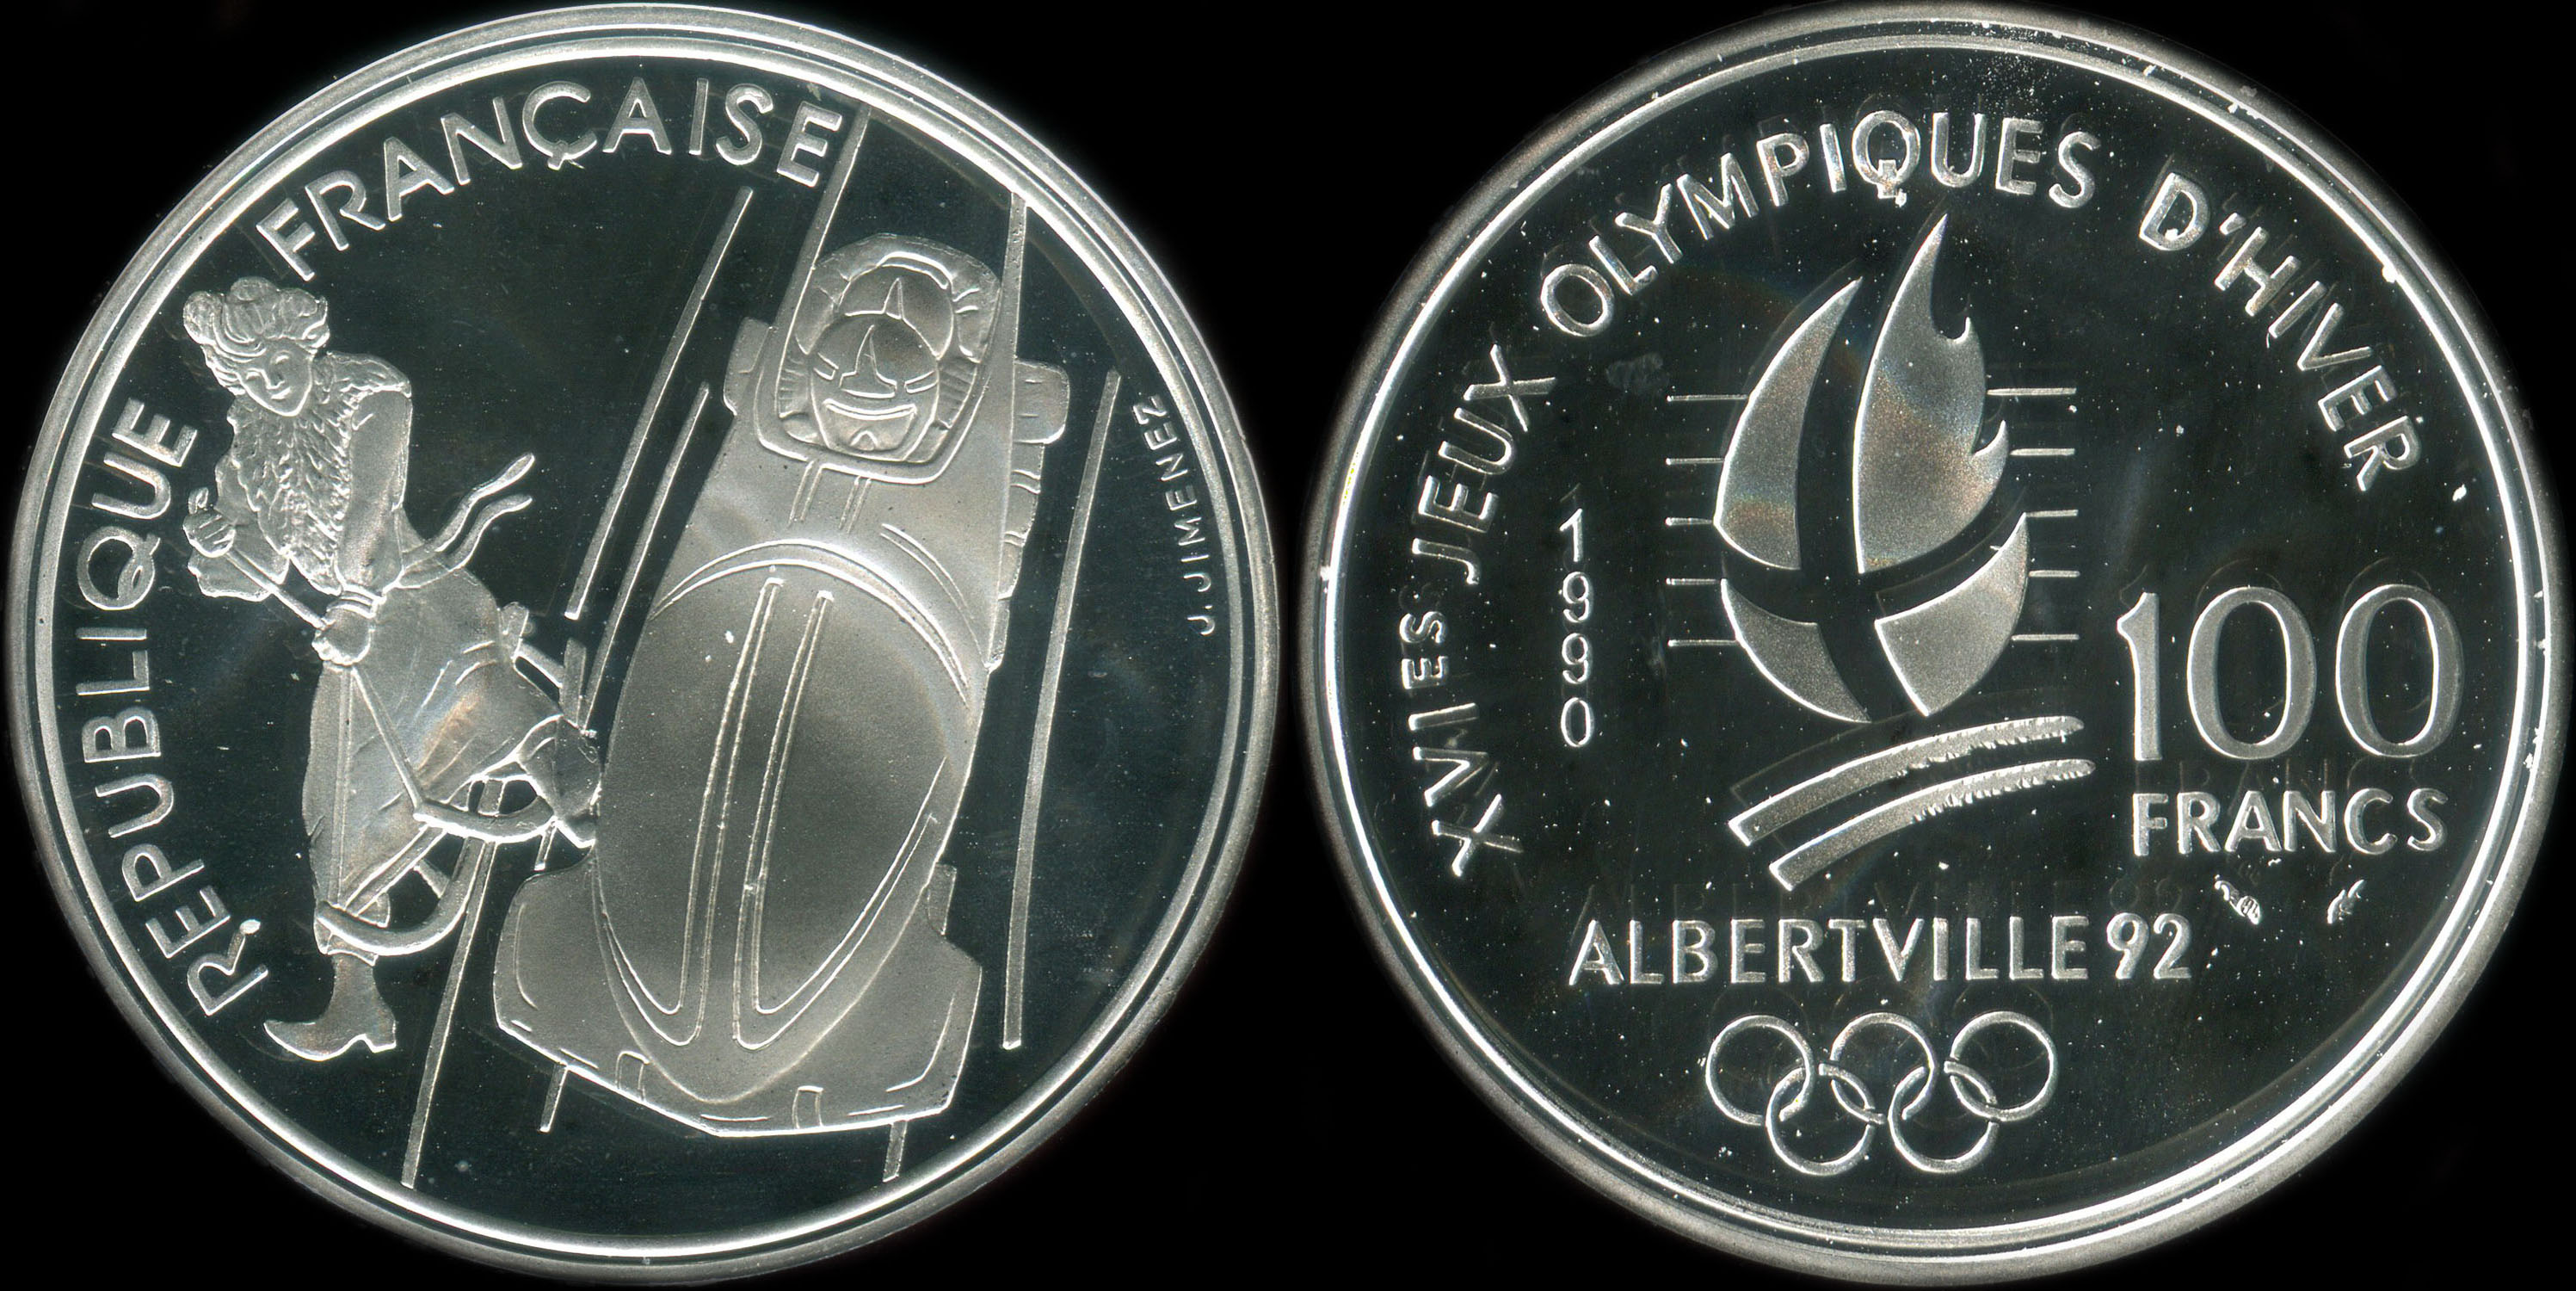 Pice de 100 francs 1990 - XVIes Jeux Olympiques d'Hiver - Albertville 92 - Bobsleigh - Luge de la Belle Epoque